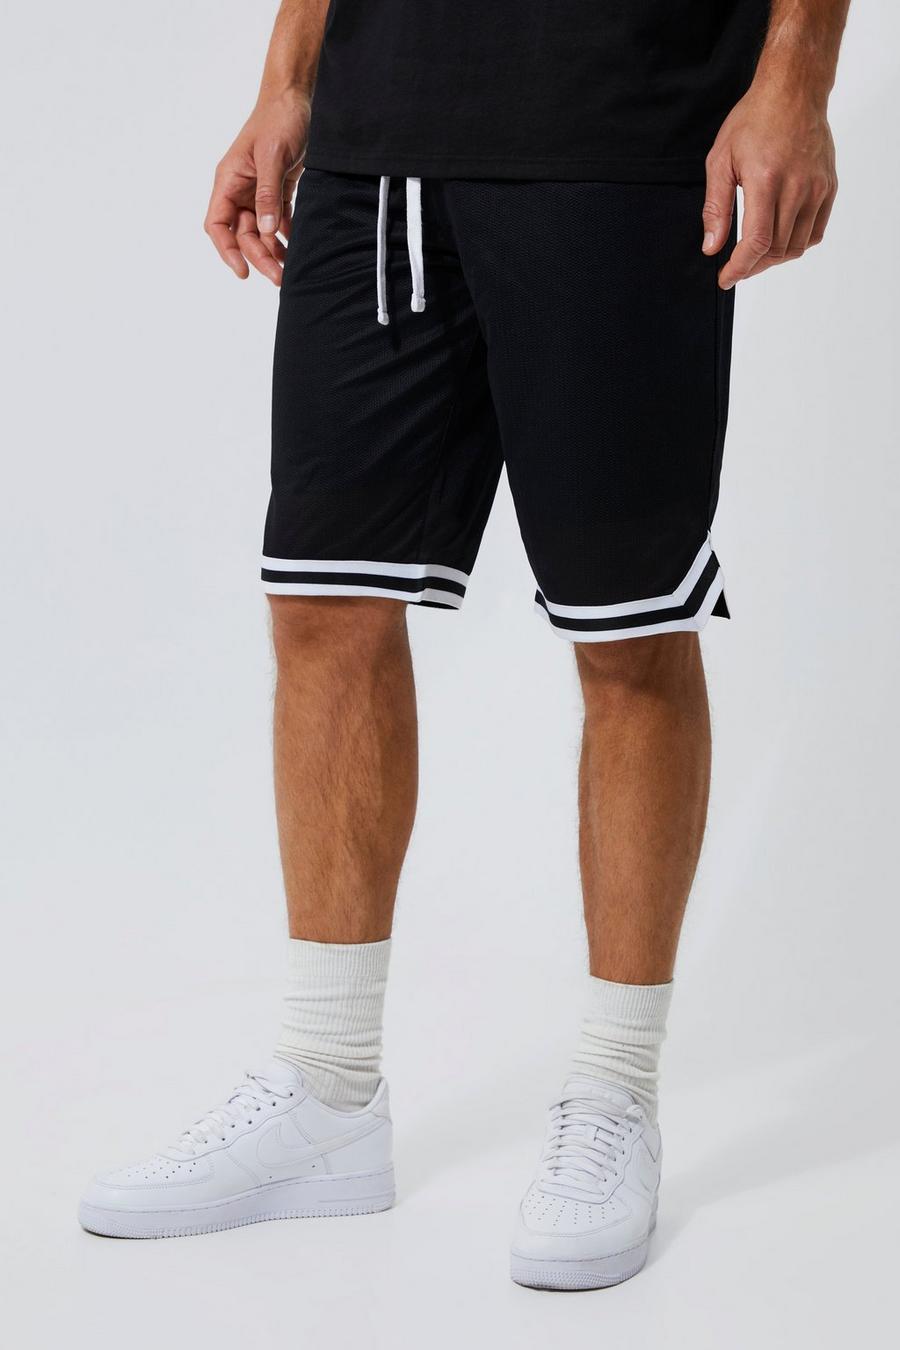 Pantalones cortos Tall de malla estilo baloncesto con cinta, Negro image number 1